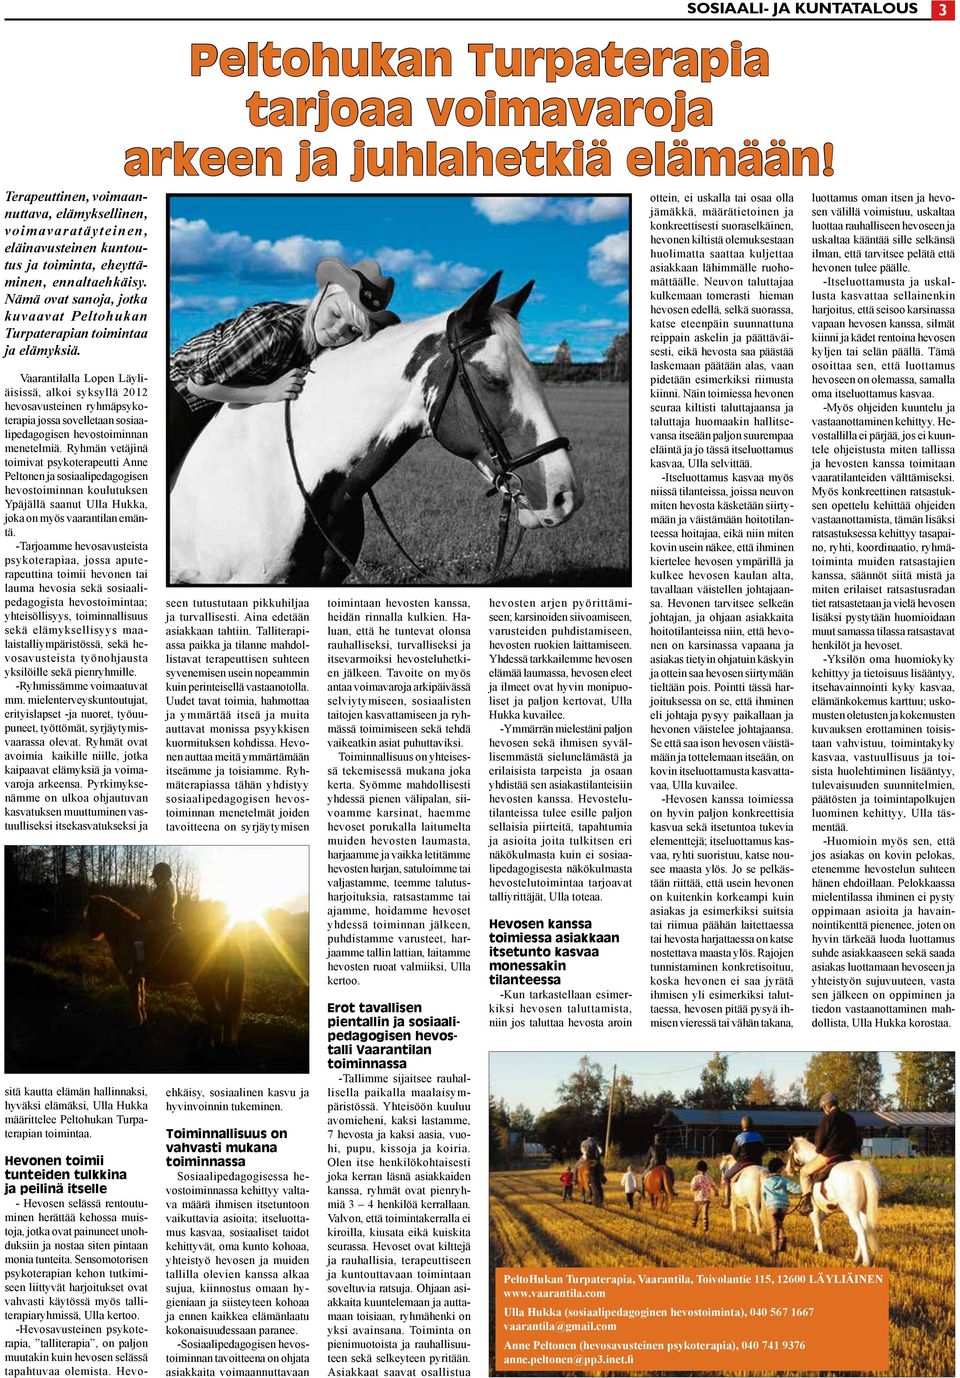 Vaarantilalla Lopen Läyliäisissä, alkoi syksyllä 2012 hevosavusteinen ryhmäpsykoterapia jossa sovelletaan sosiaalipedagogisen hevostoiminnan menetelmiä.